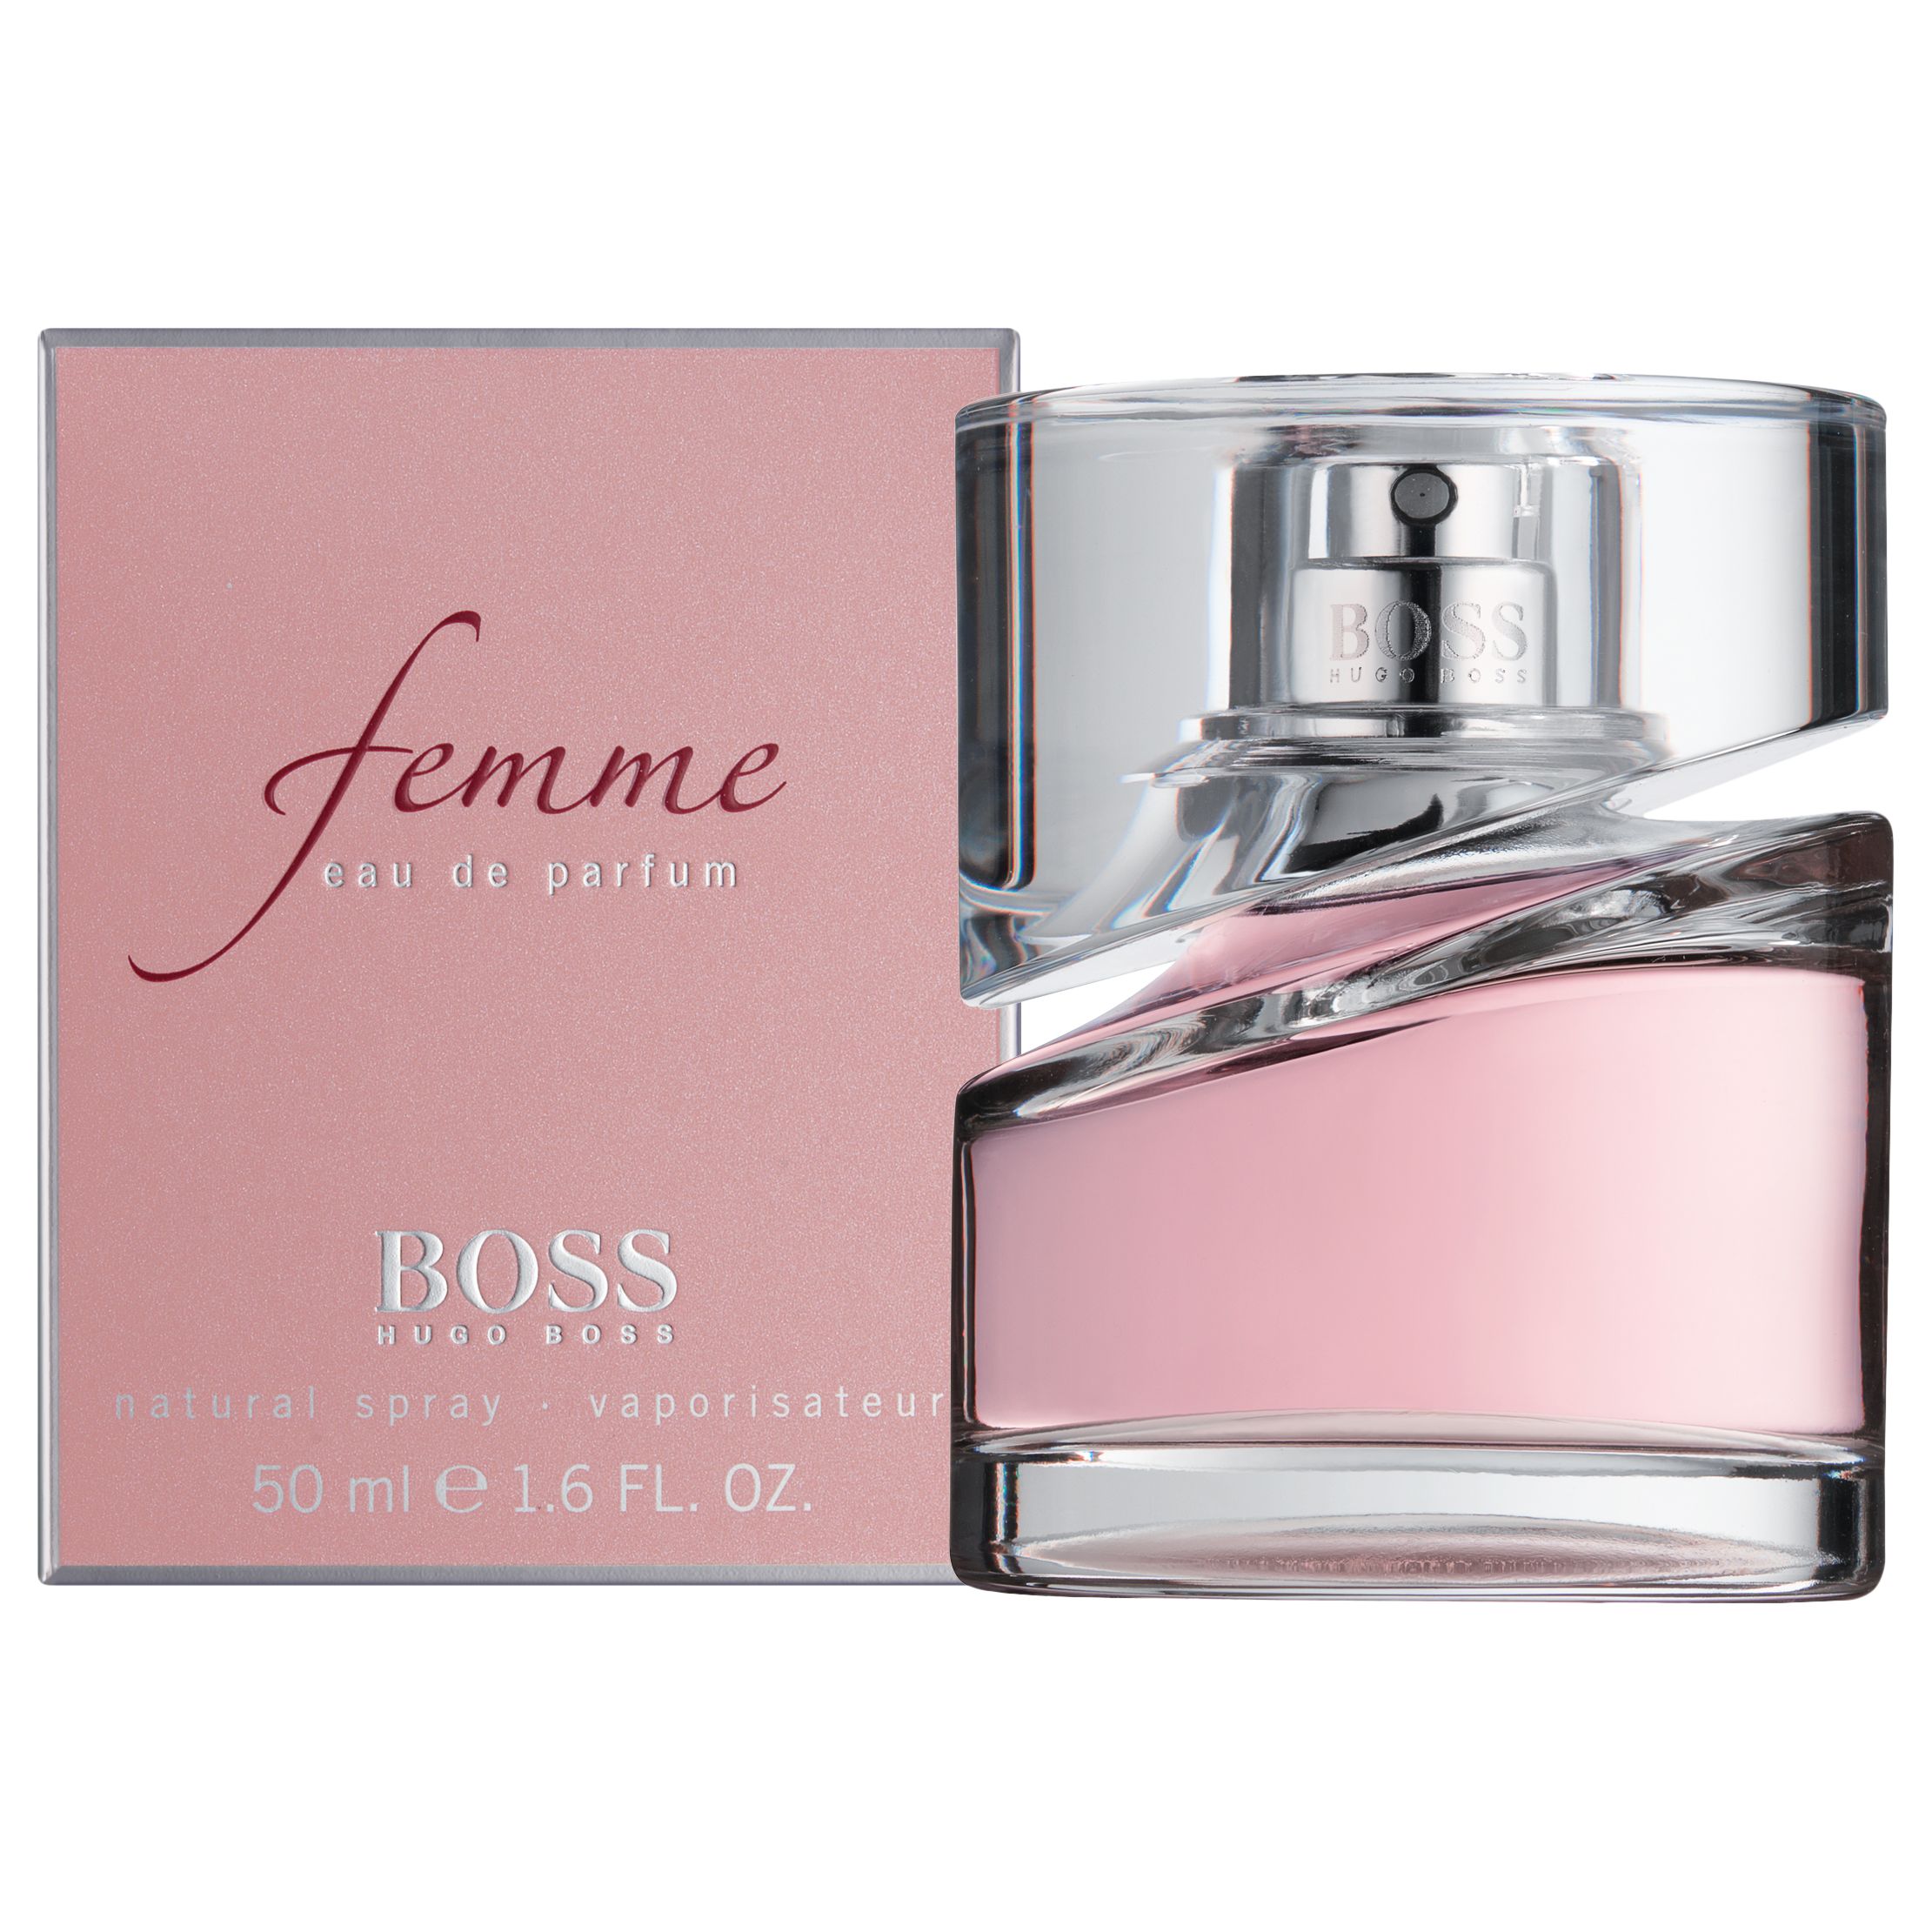 HUGO BOSS BOSS Femme Eau de Parfum, 50ml